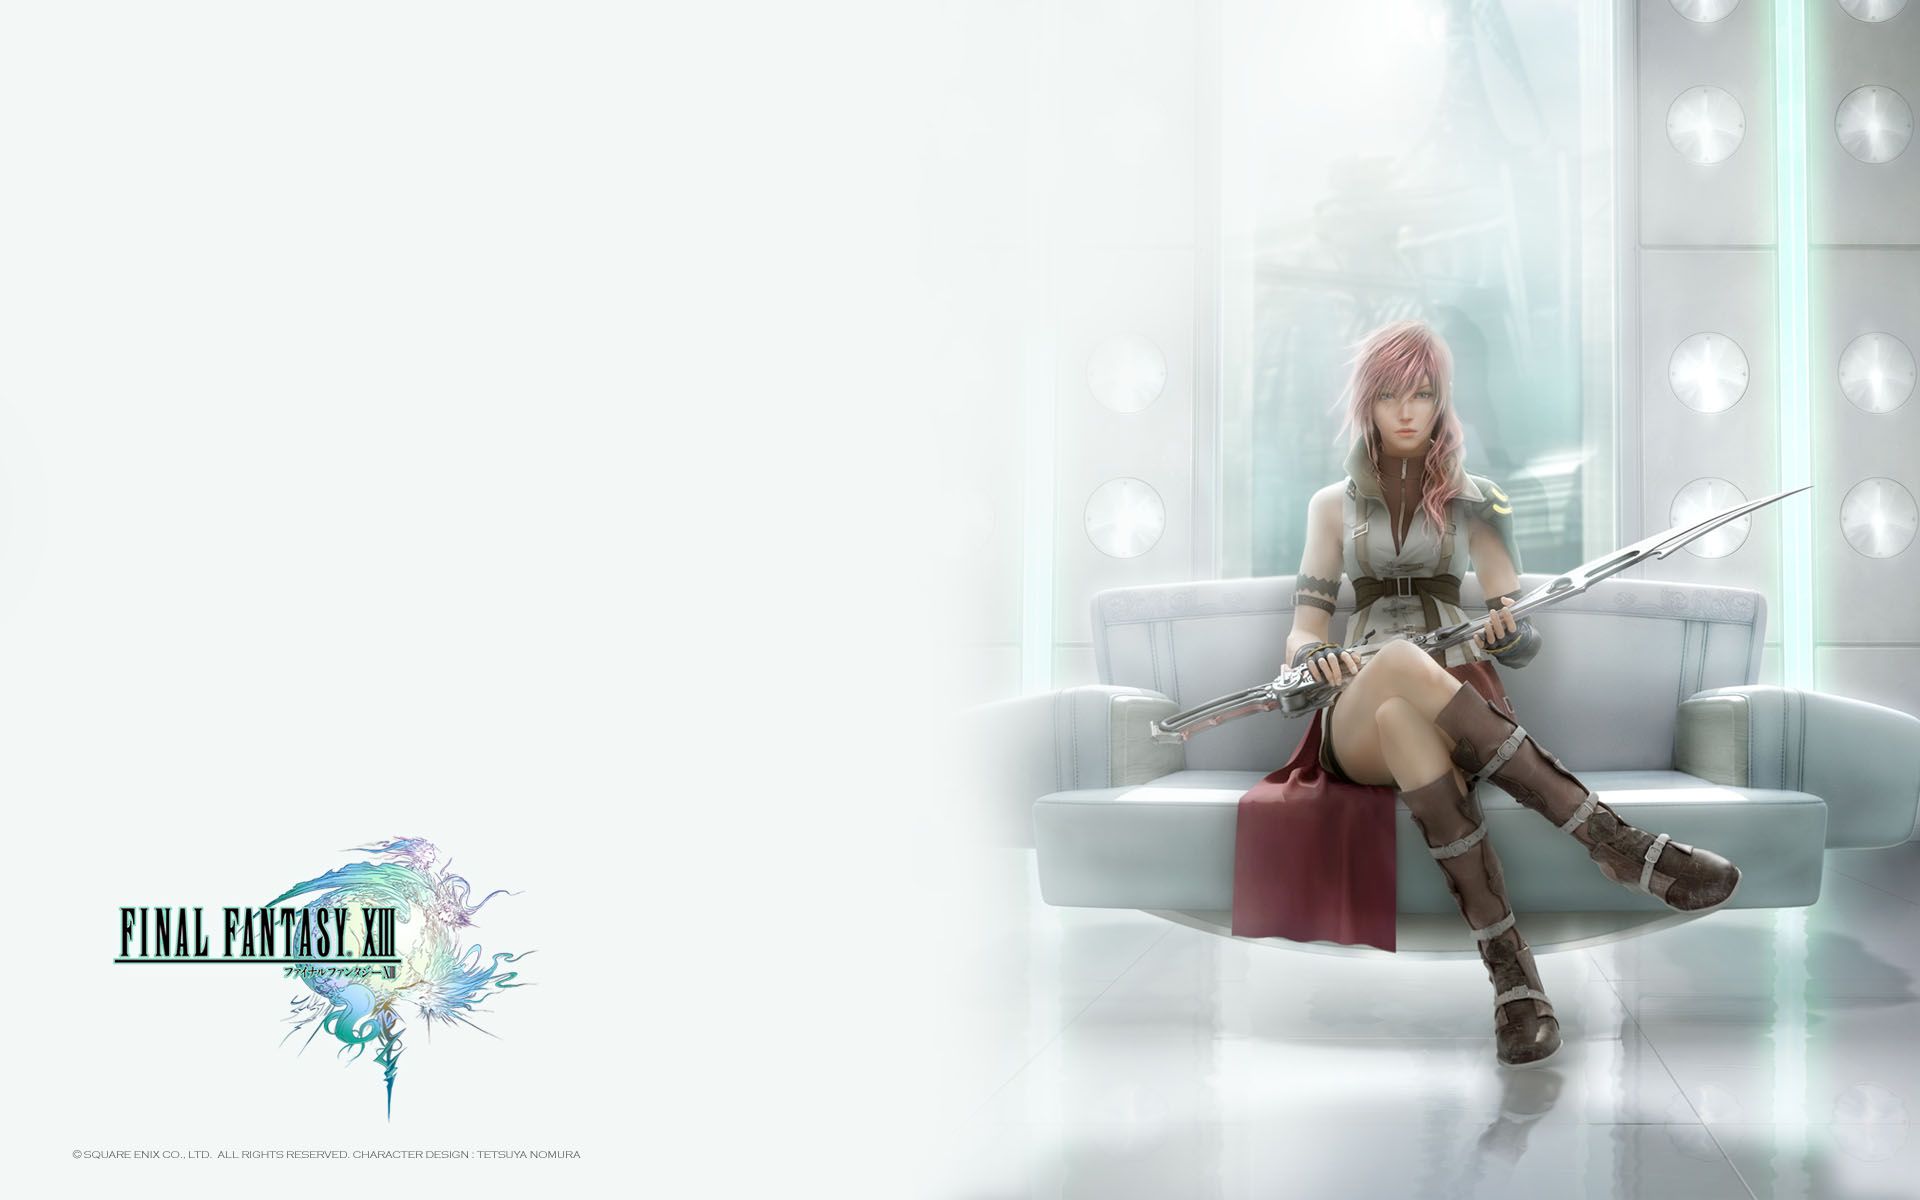 Fabula Nova Crystallis: Final Fantasy wallpaper